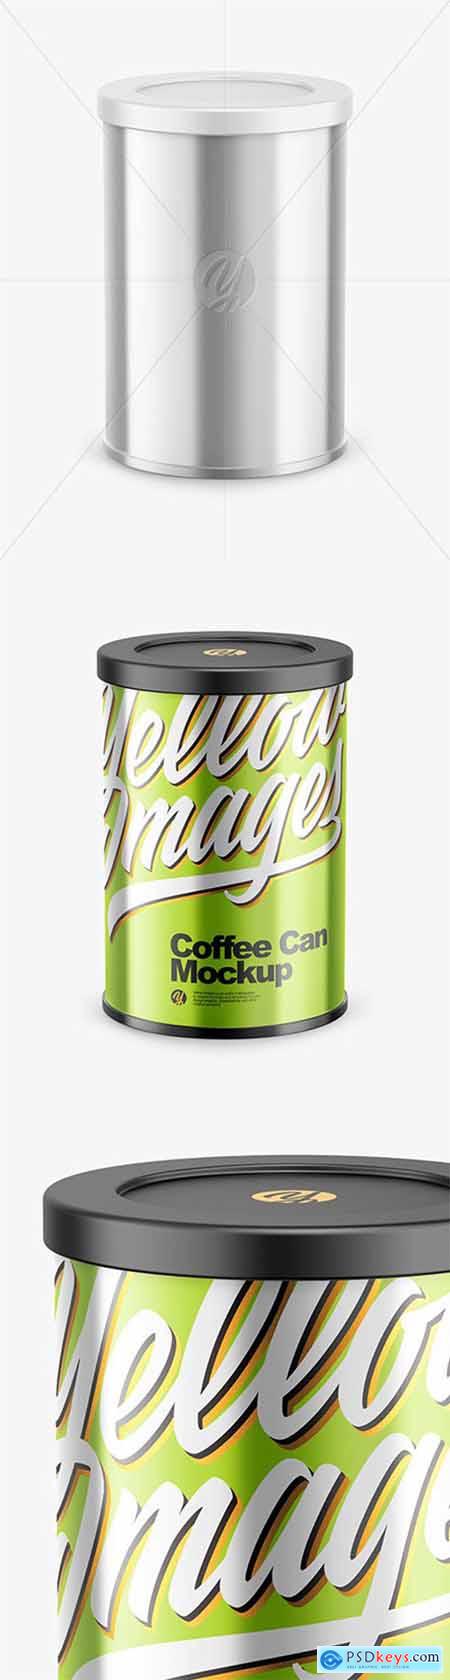 Coffee Tin Can with Glossy Metallic Finish Mockup 80612